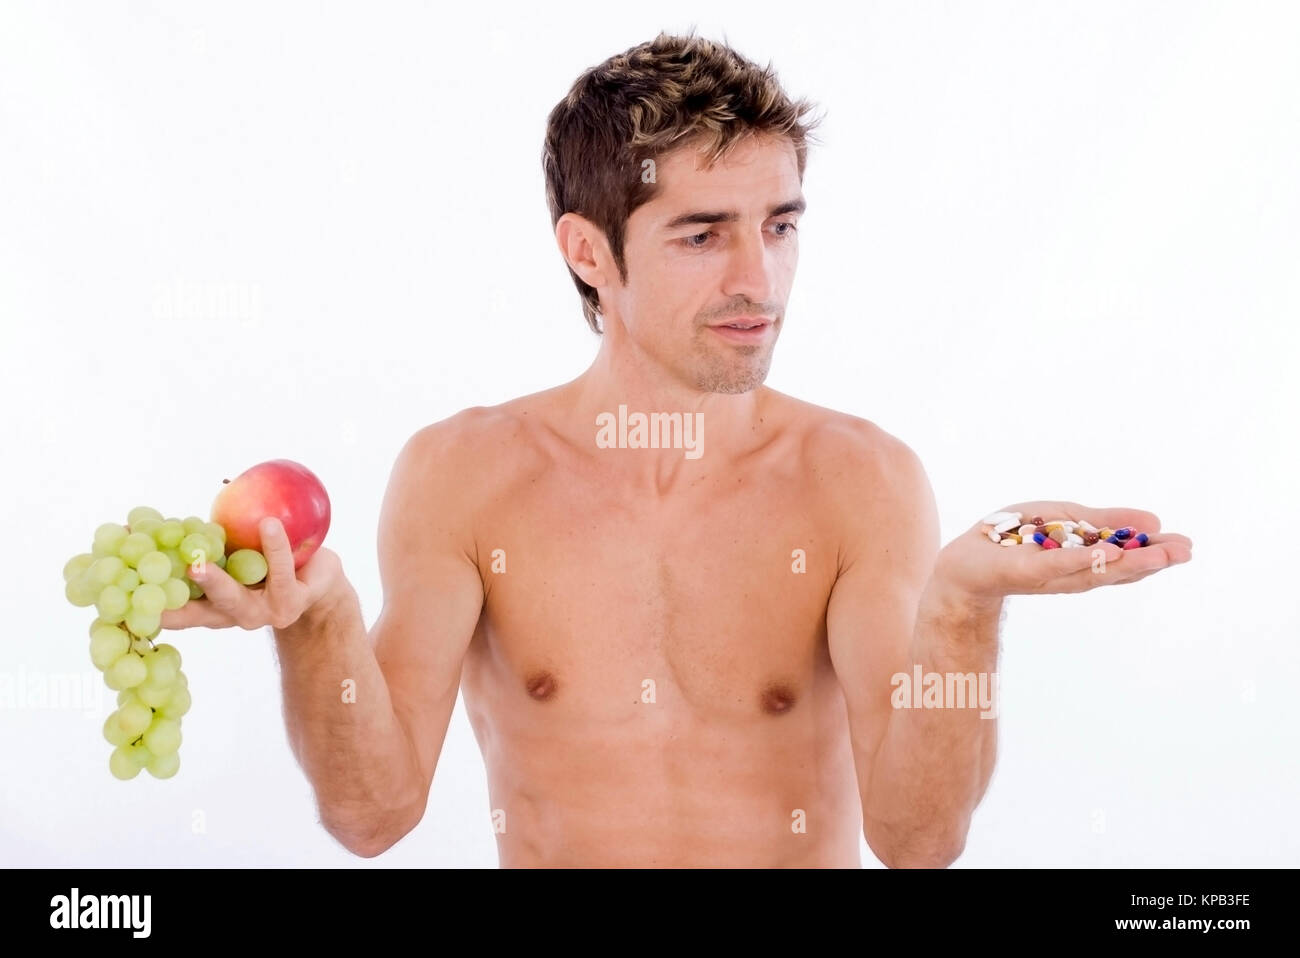 Model release, Mann mit Obst und Tabletten in den Haenden, Vitamine oder Nahrungsergaenzungss - man with fruits and tablets in hands Stock Photo